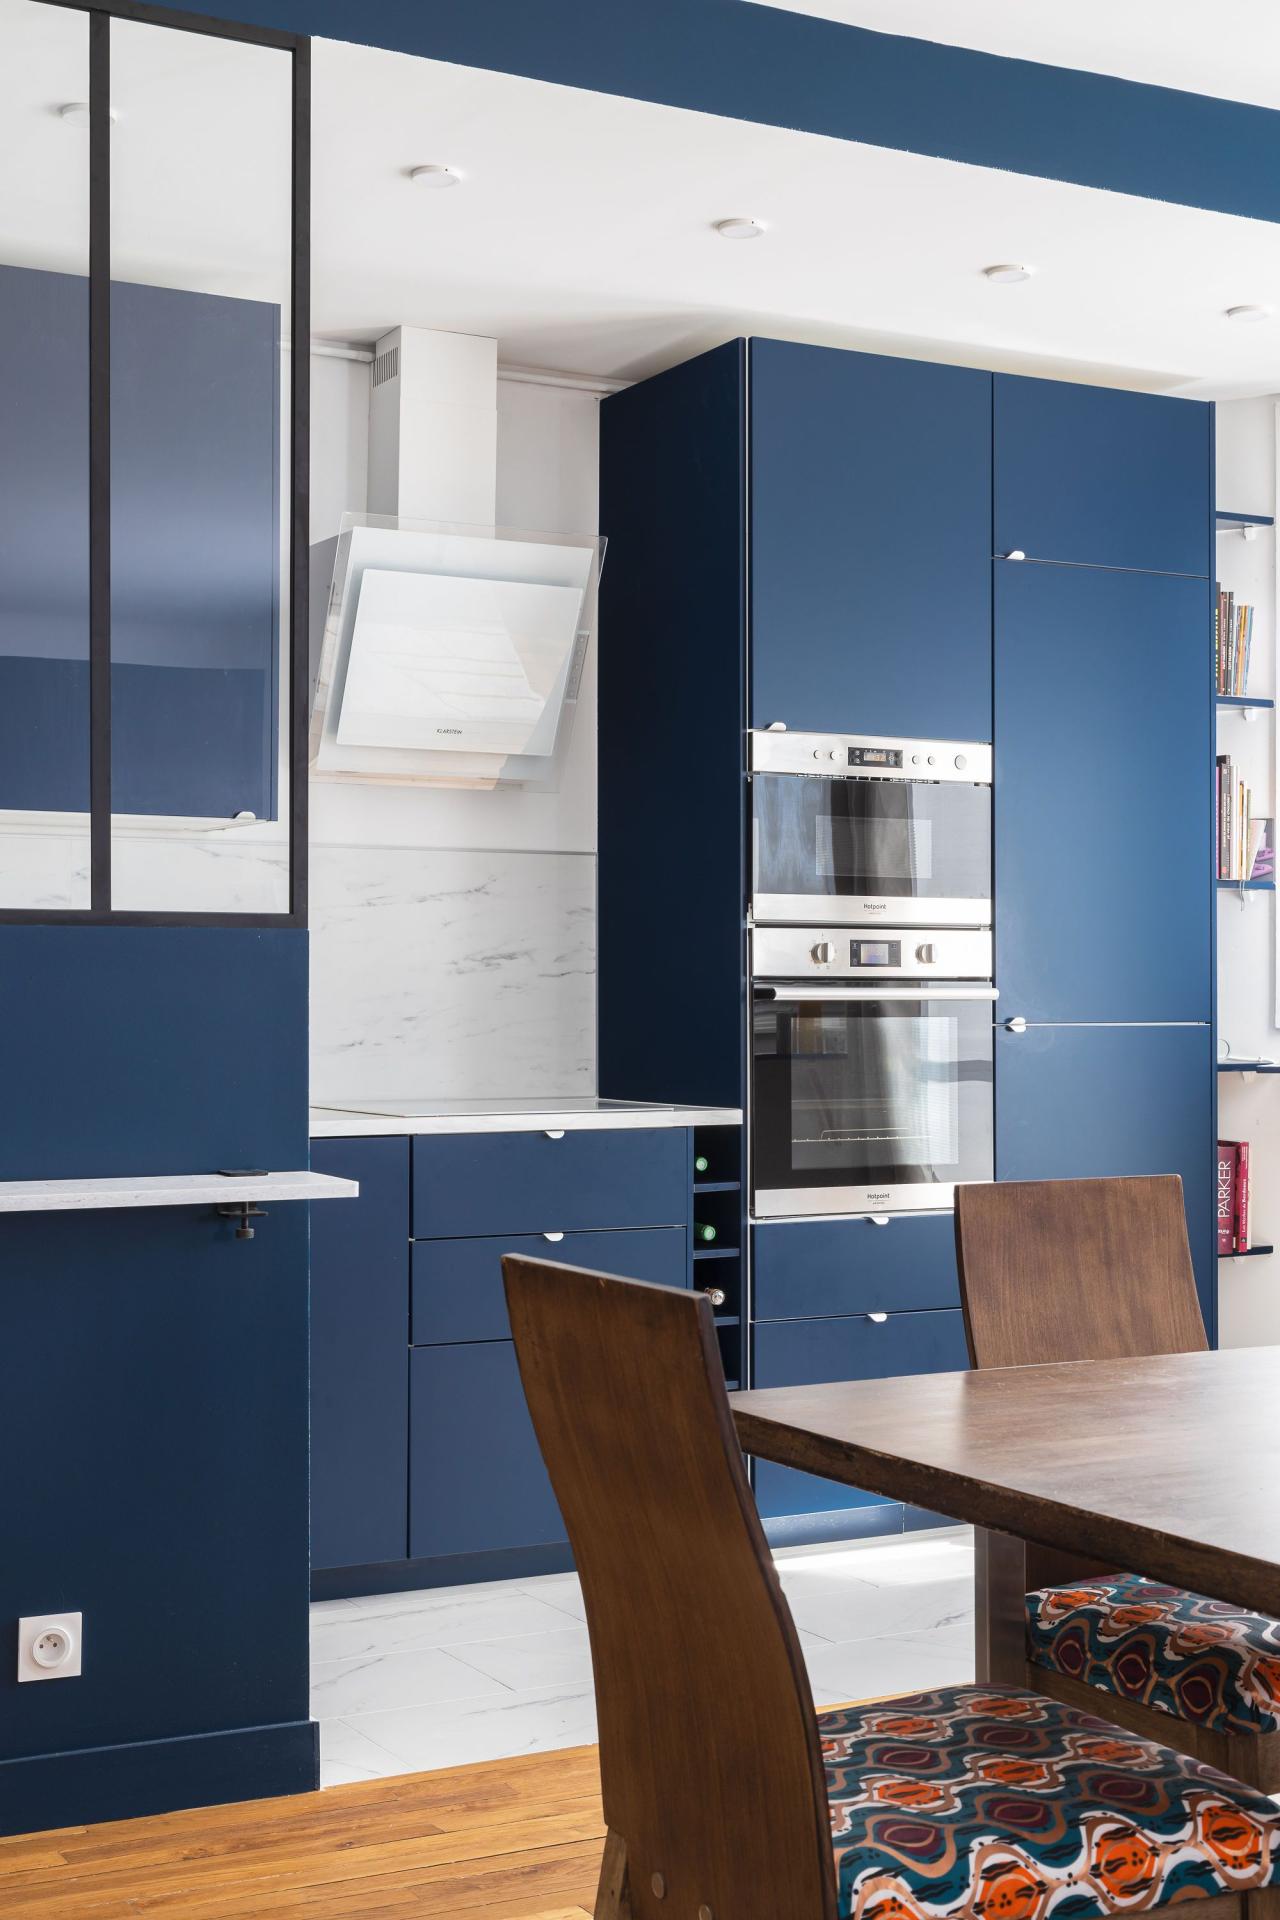 Eine Küche mit Glaswand in Blau 02 - Bleu nuit von Wherdeco - Ansicht von links